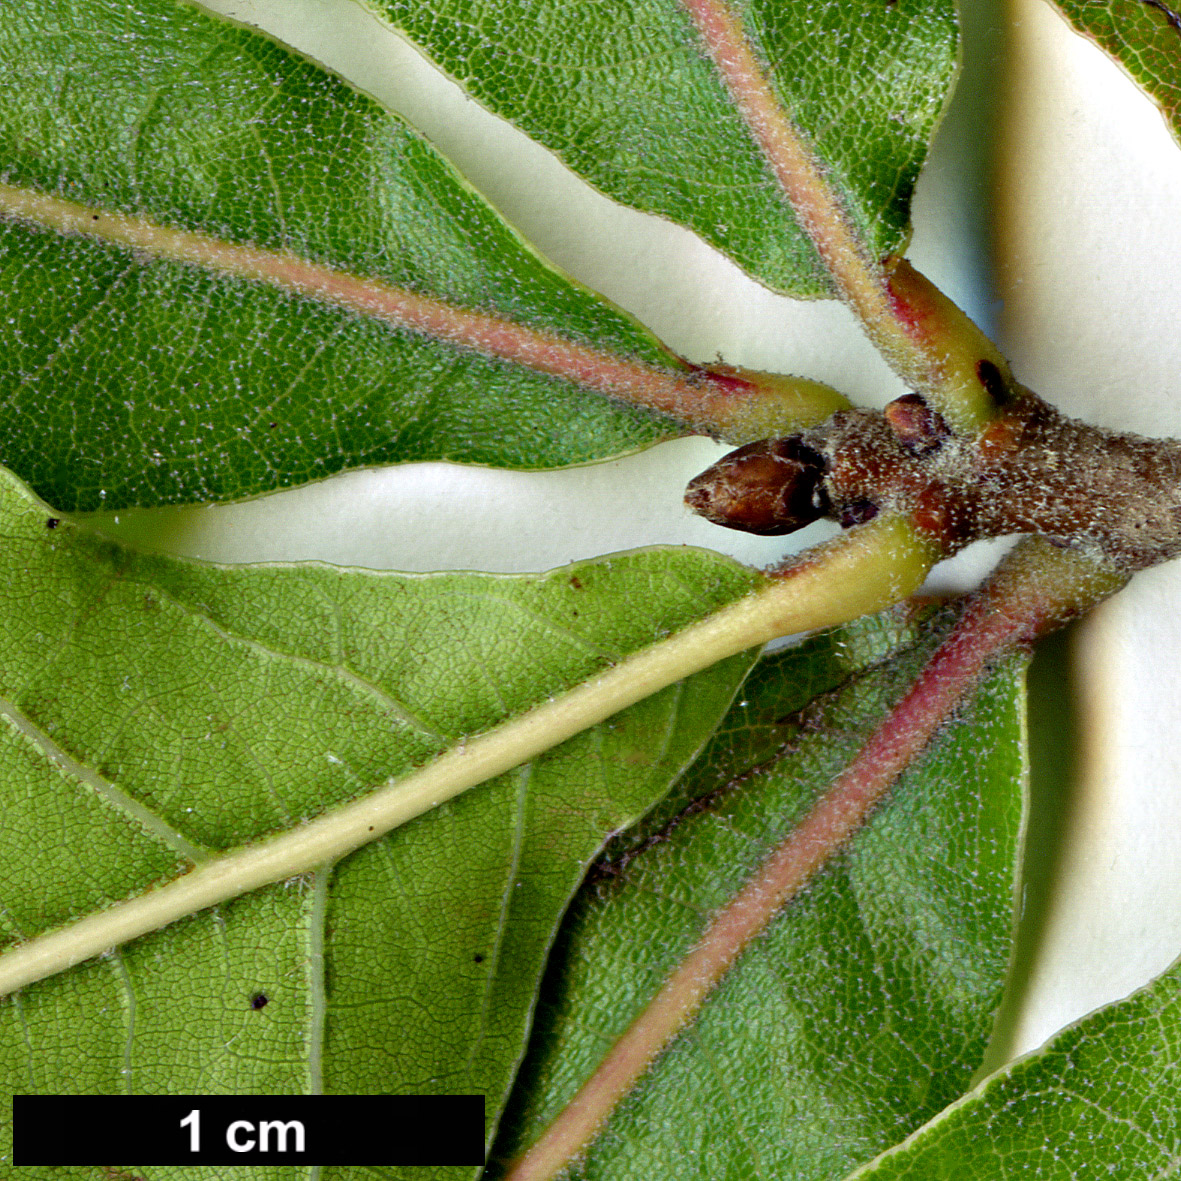 High resolution image: Family: Fagaceae - Genus: Quercus - Taxon: marilandica - SpeciesSub: var. ashei